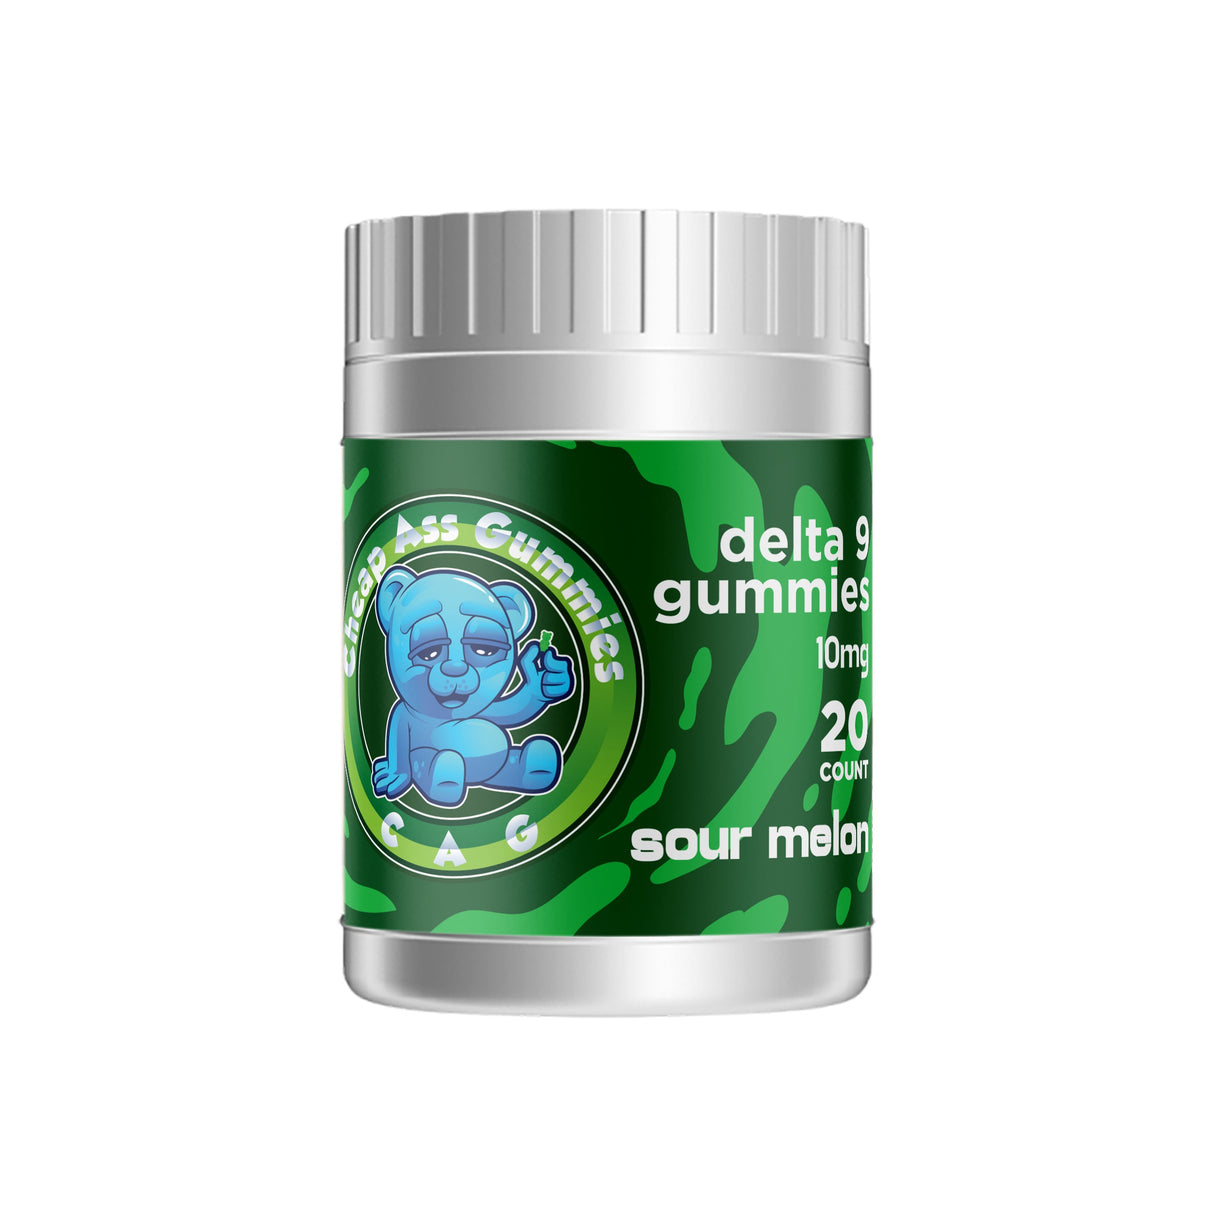 Cheap Ass Gummies Delta 9 THC Gummies - Sour Melon